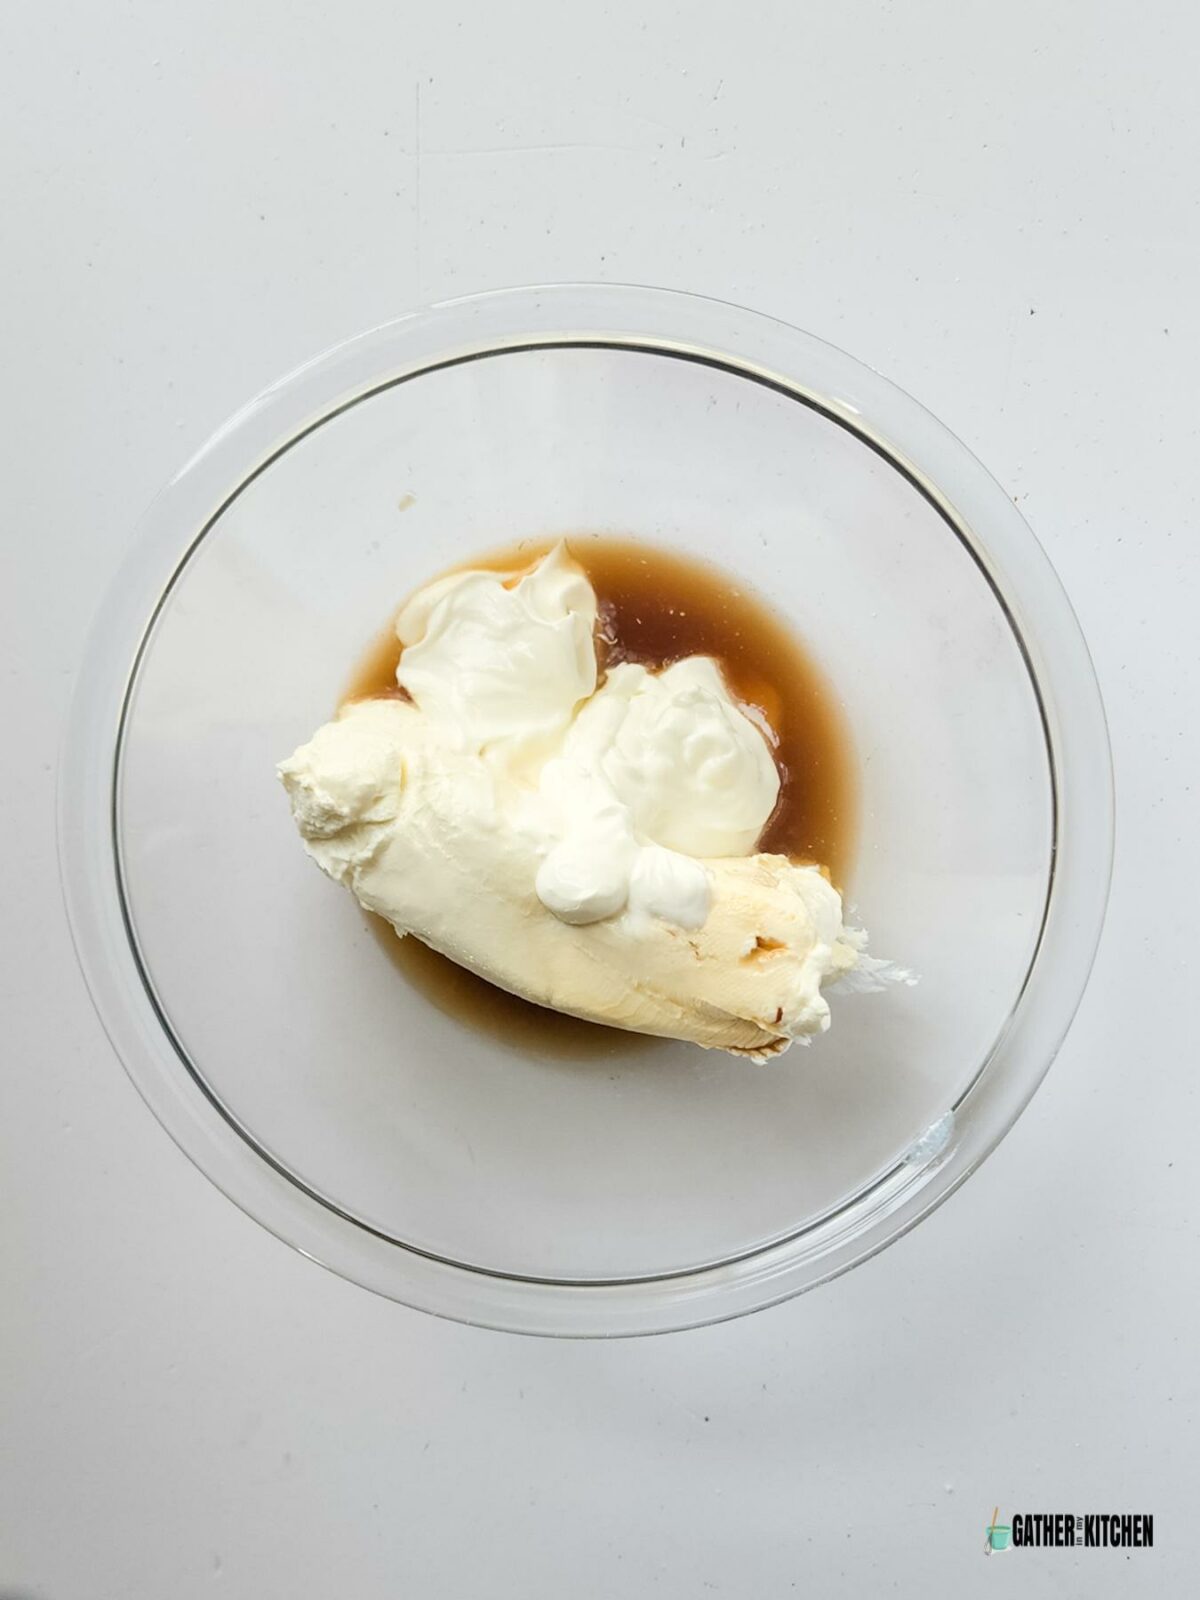 Vanilla, sour cream, lemon juice, sugar and vanilla in a bowl.